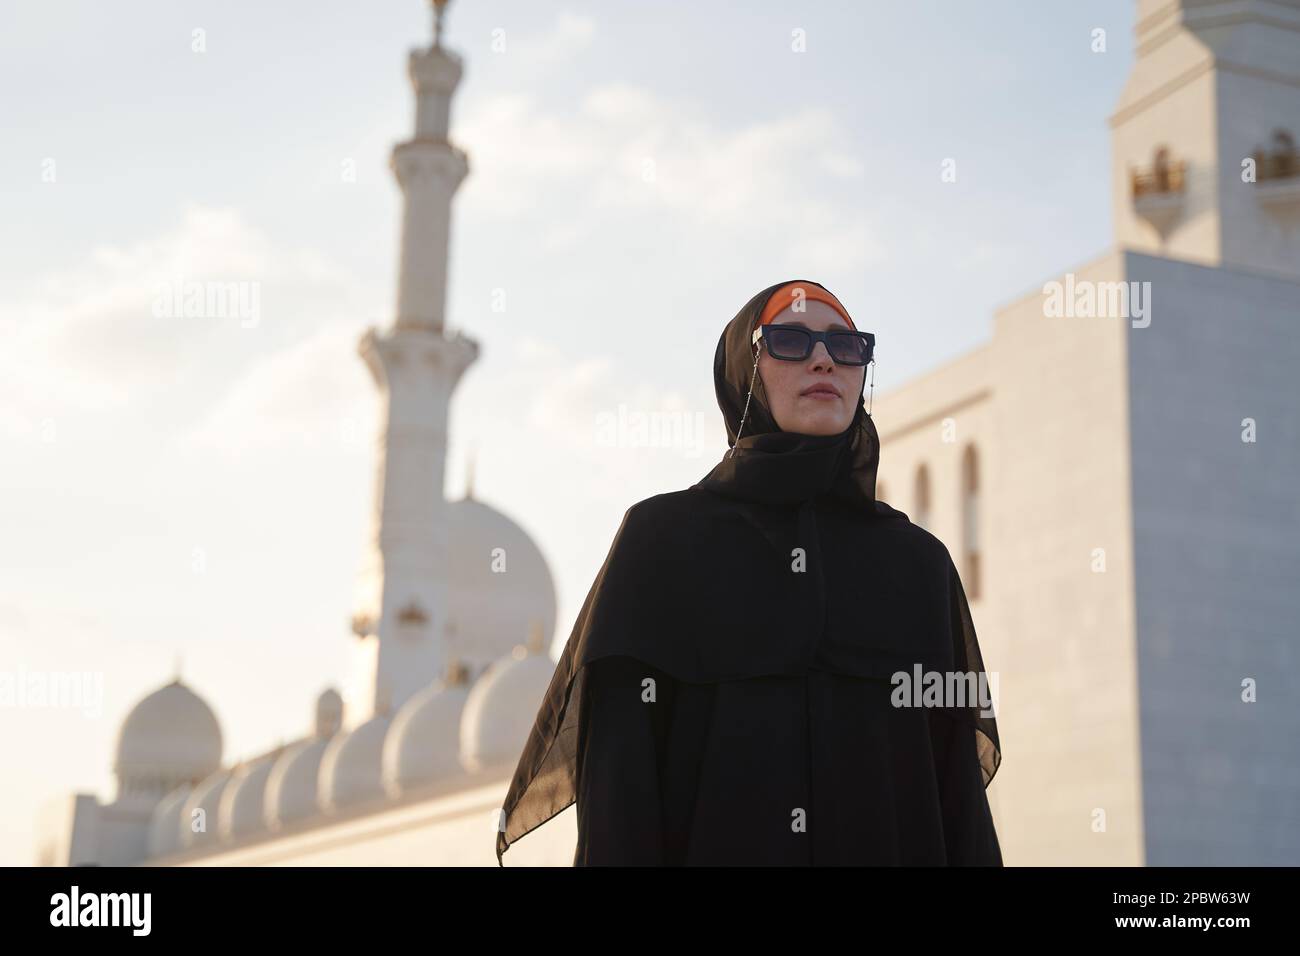 La donna europea sta facendo un giro turistico in un paese arabo in abiti nazionali. Foto Stock